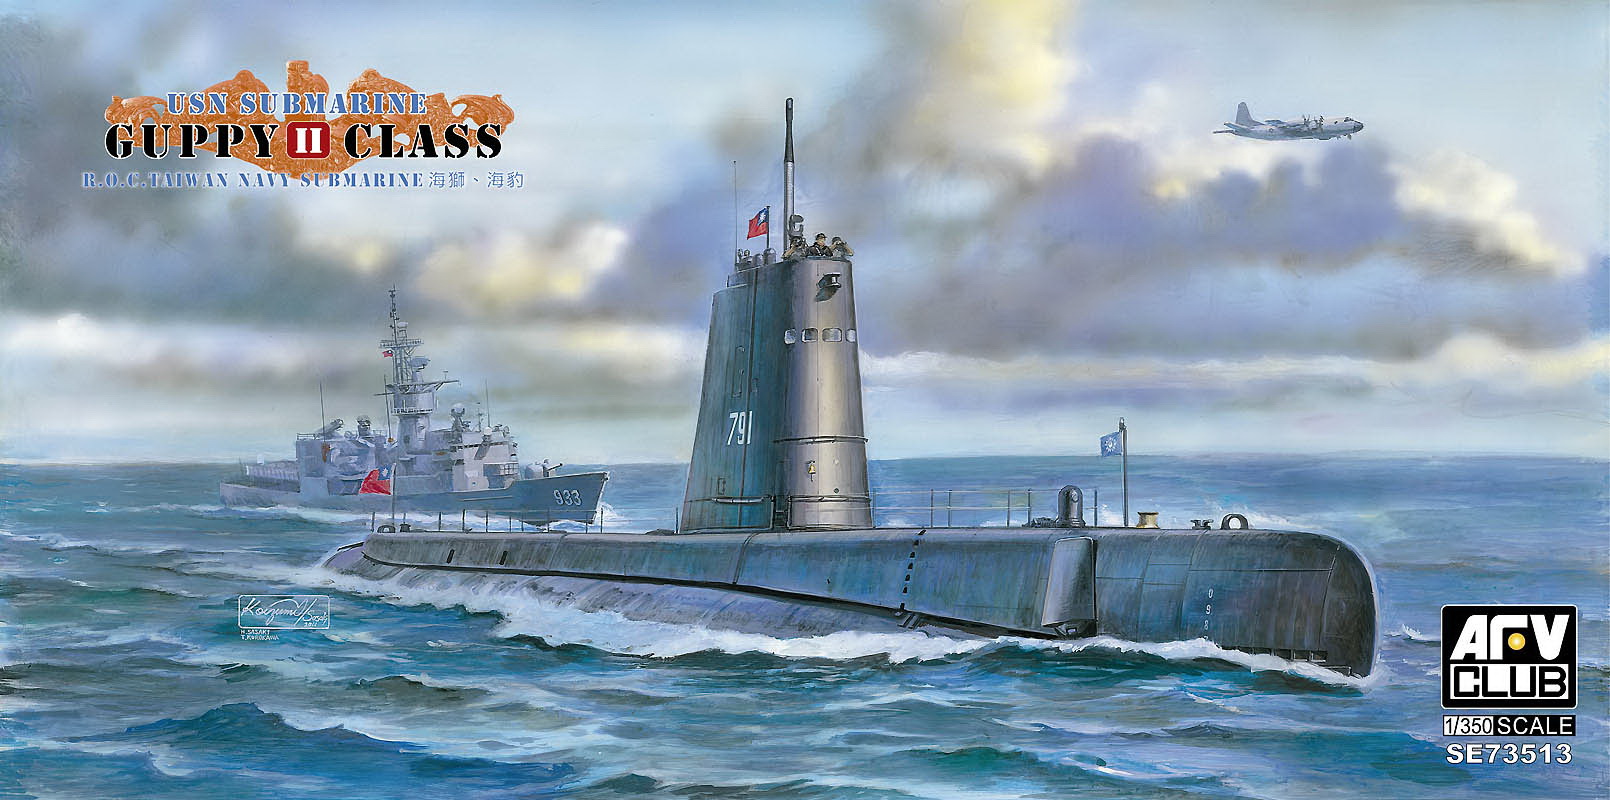 AFVクラブ 米海軍 ガピーII級 潜水艦（1/350スケール 艦船シリーズ SE73513） ミリタリー模型の商品画像